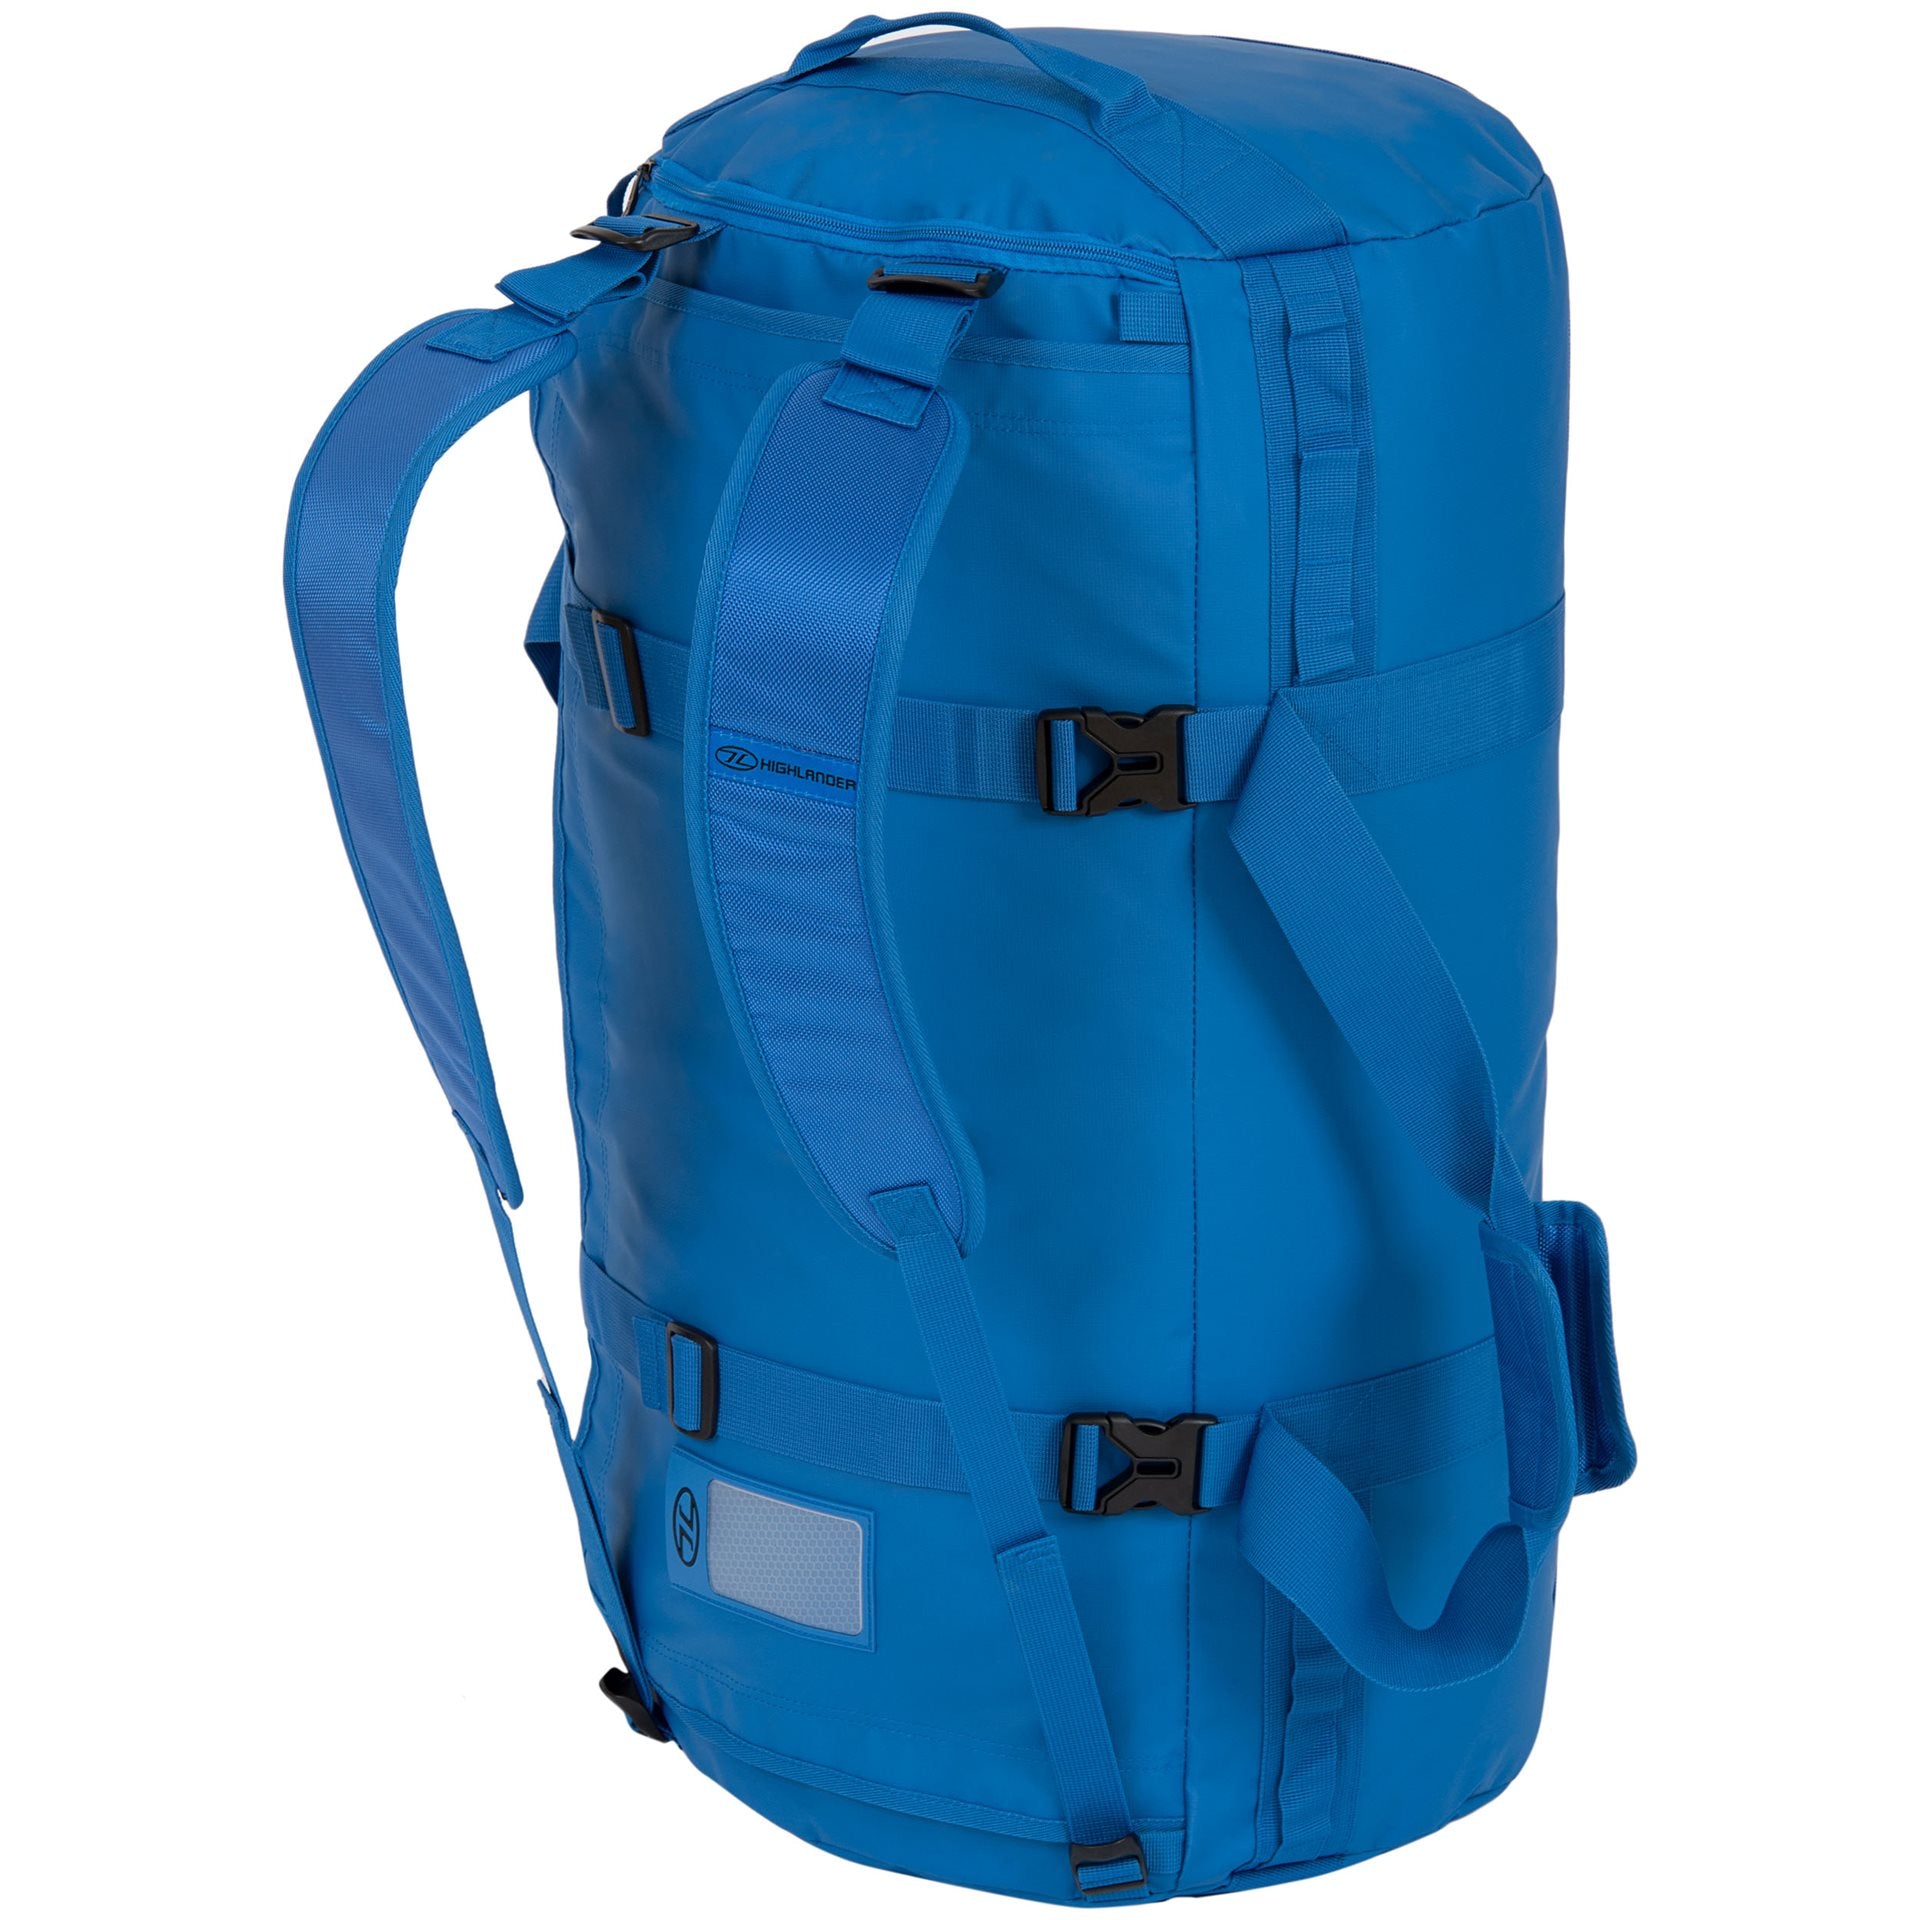 Highlander Storm Kit Bag - Duffel - 90L- Blue Duffeltas - Reisartikelen-nl